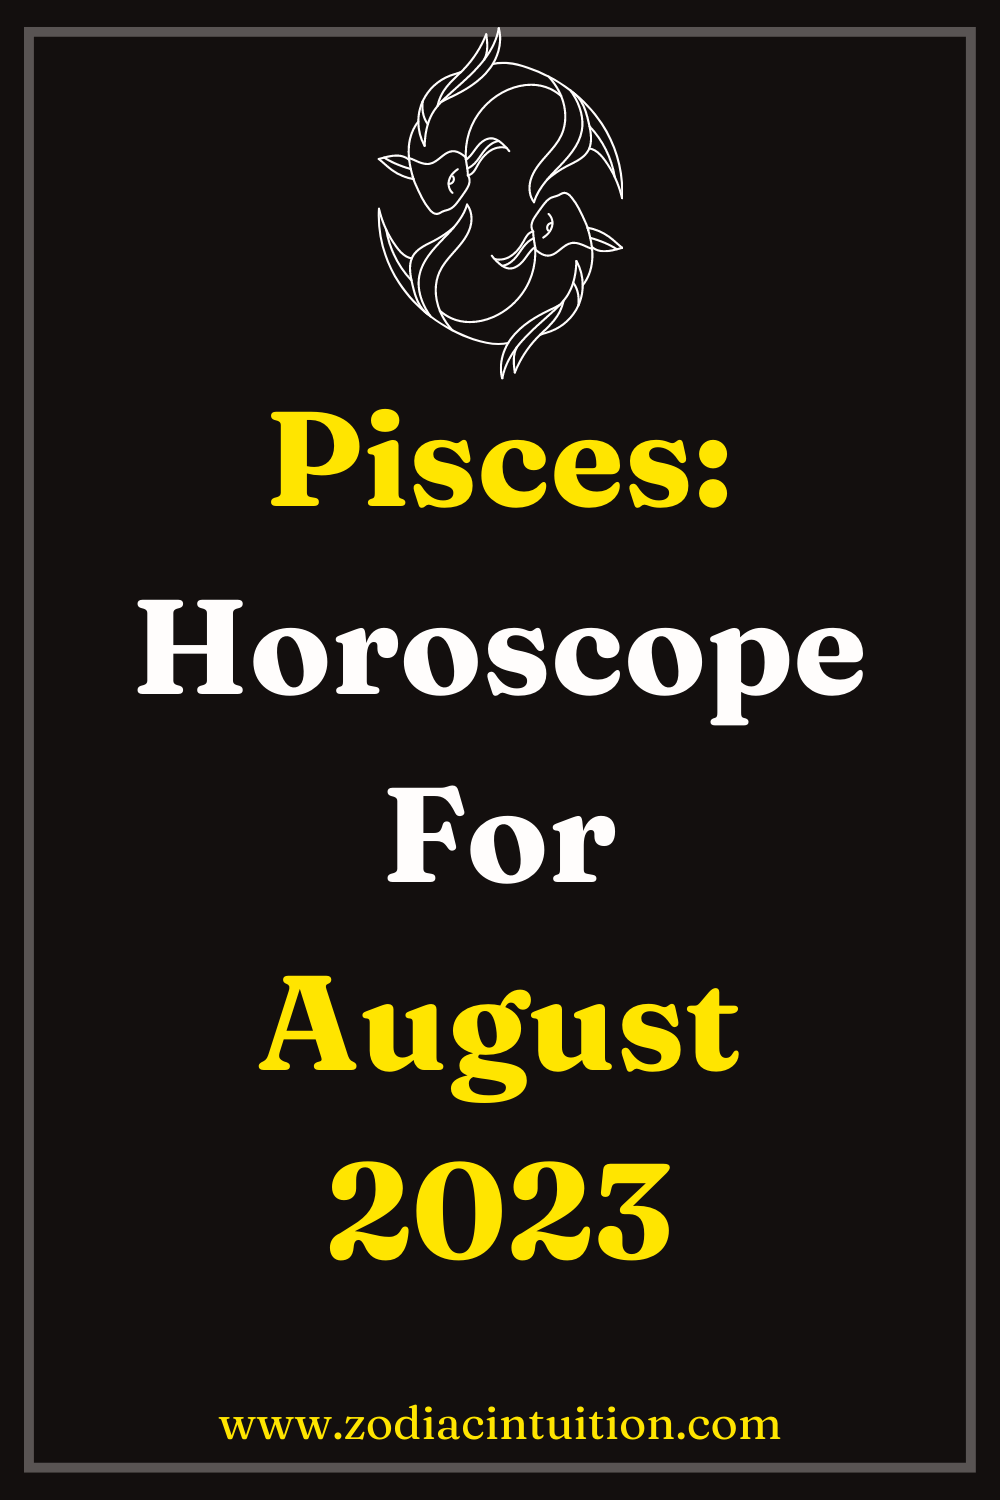 Pisces: Horoscope For August 2023